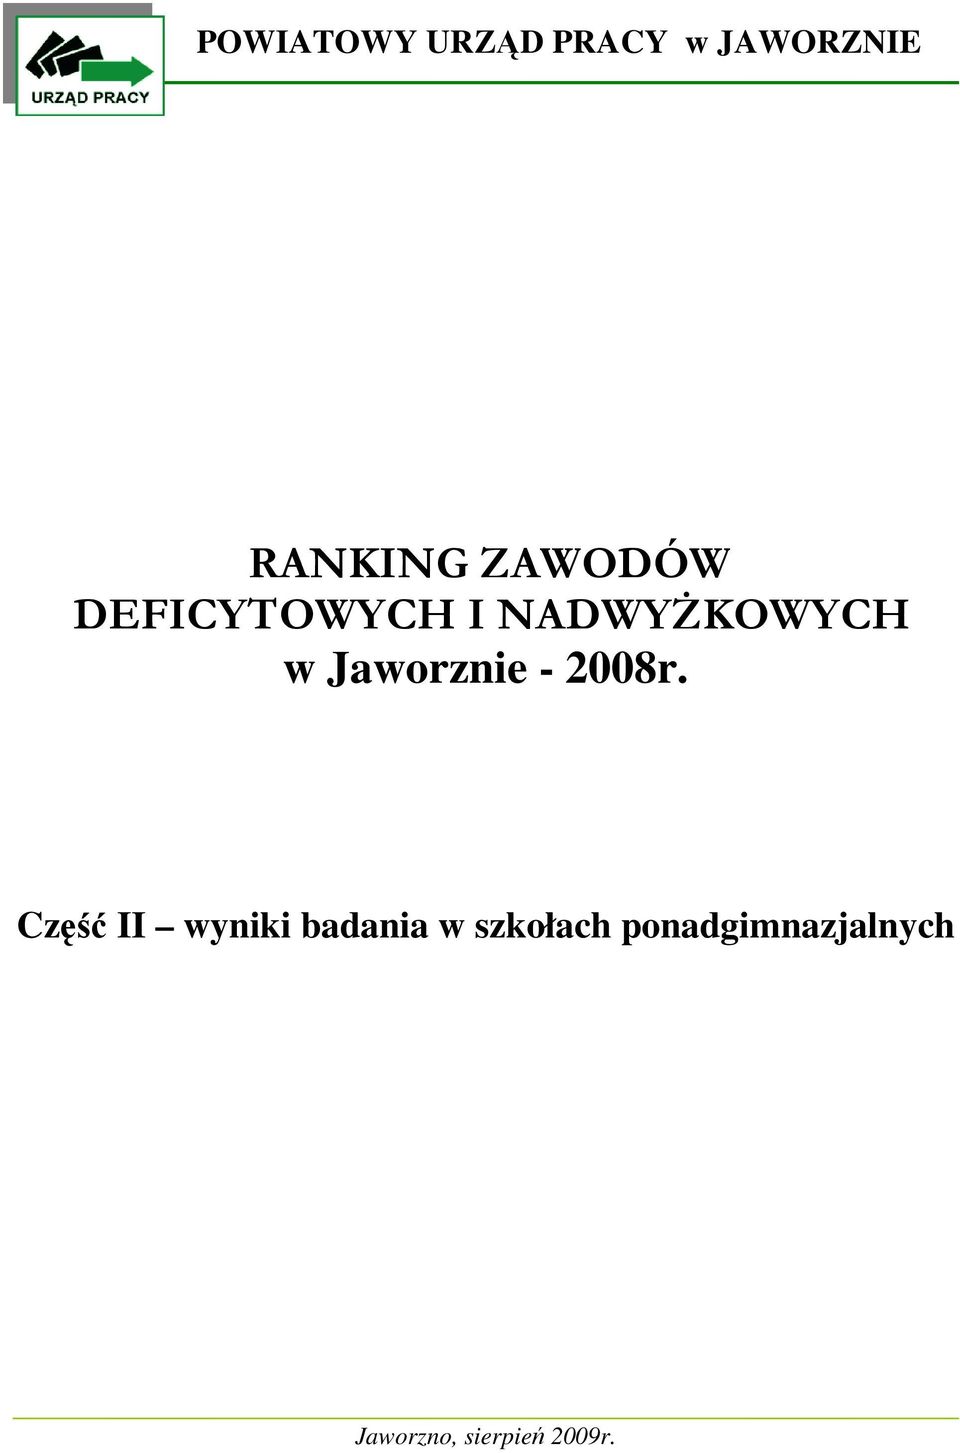 Jaworznie - 2008r.